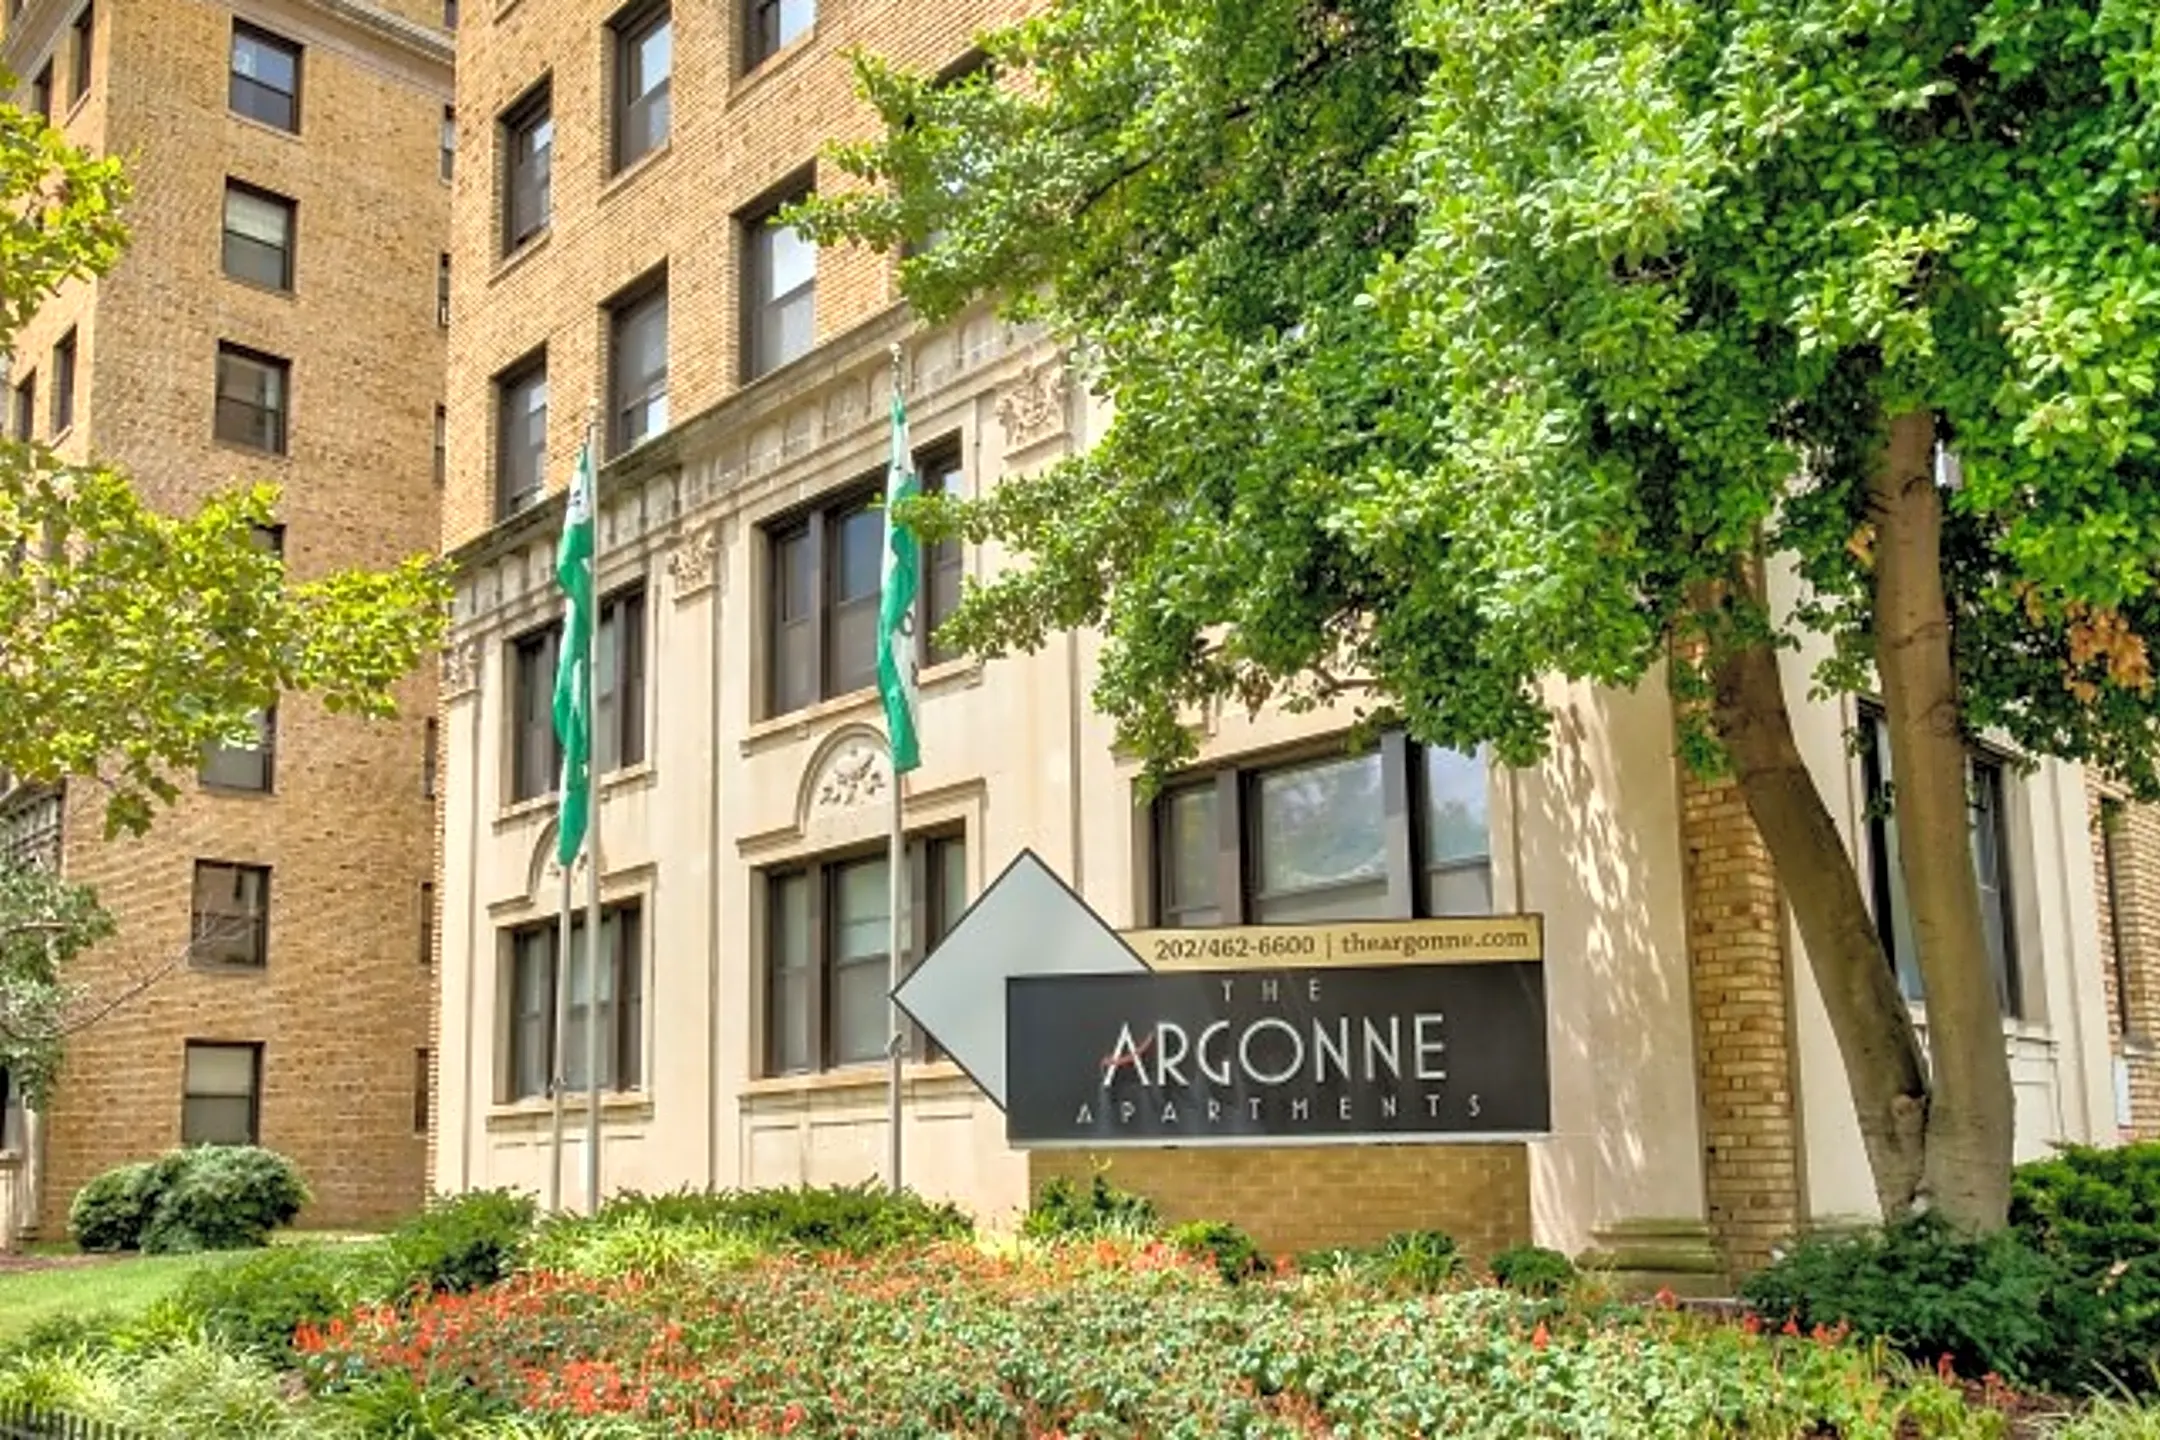 Building - The Argonne - Washington, DC